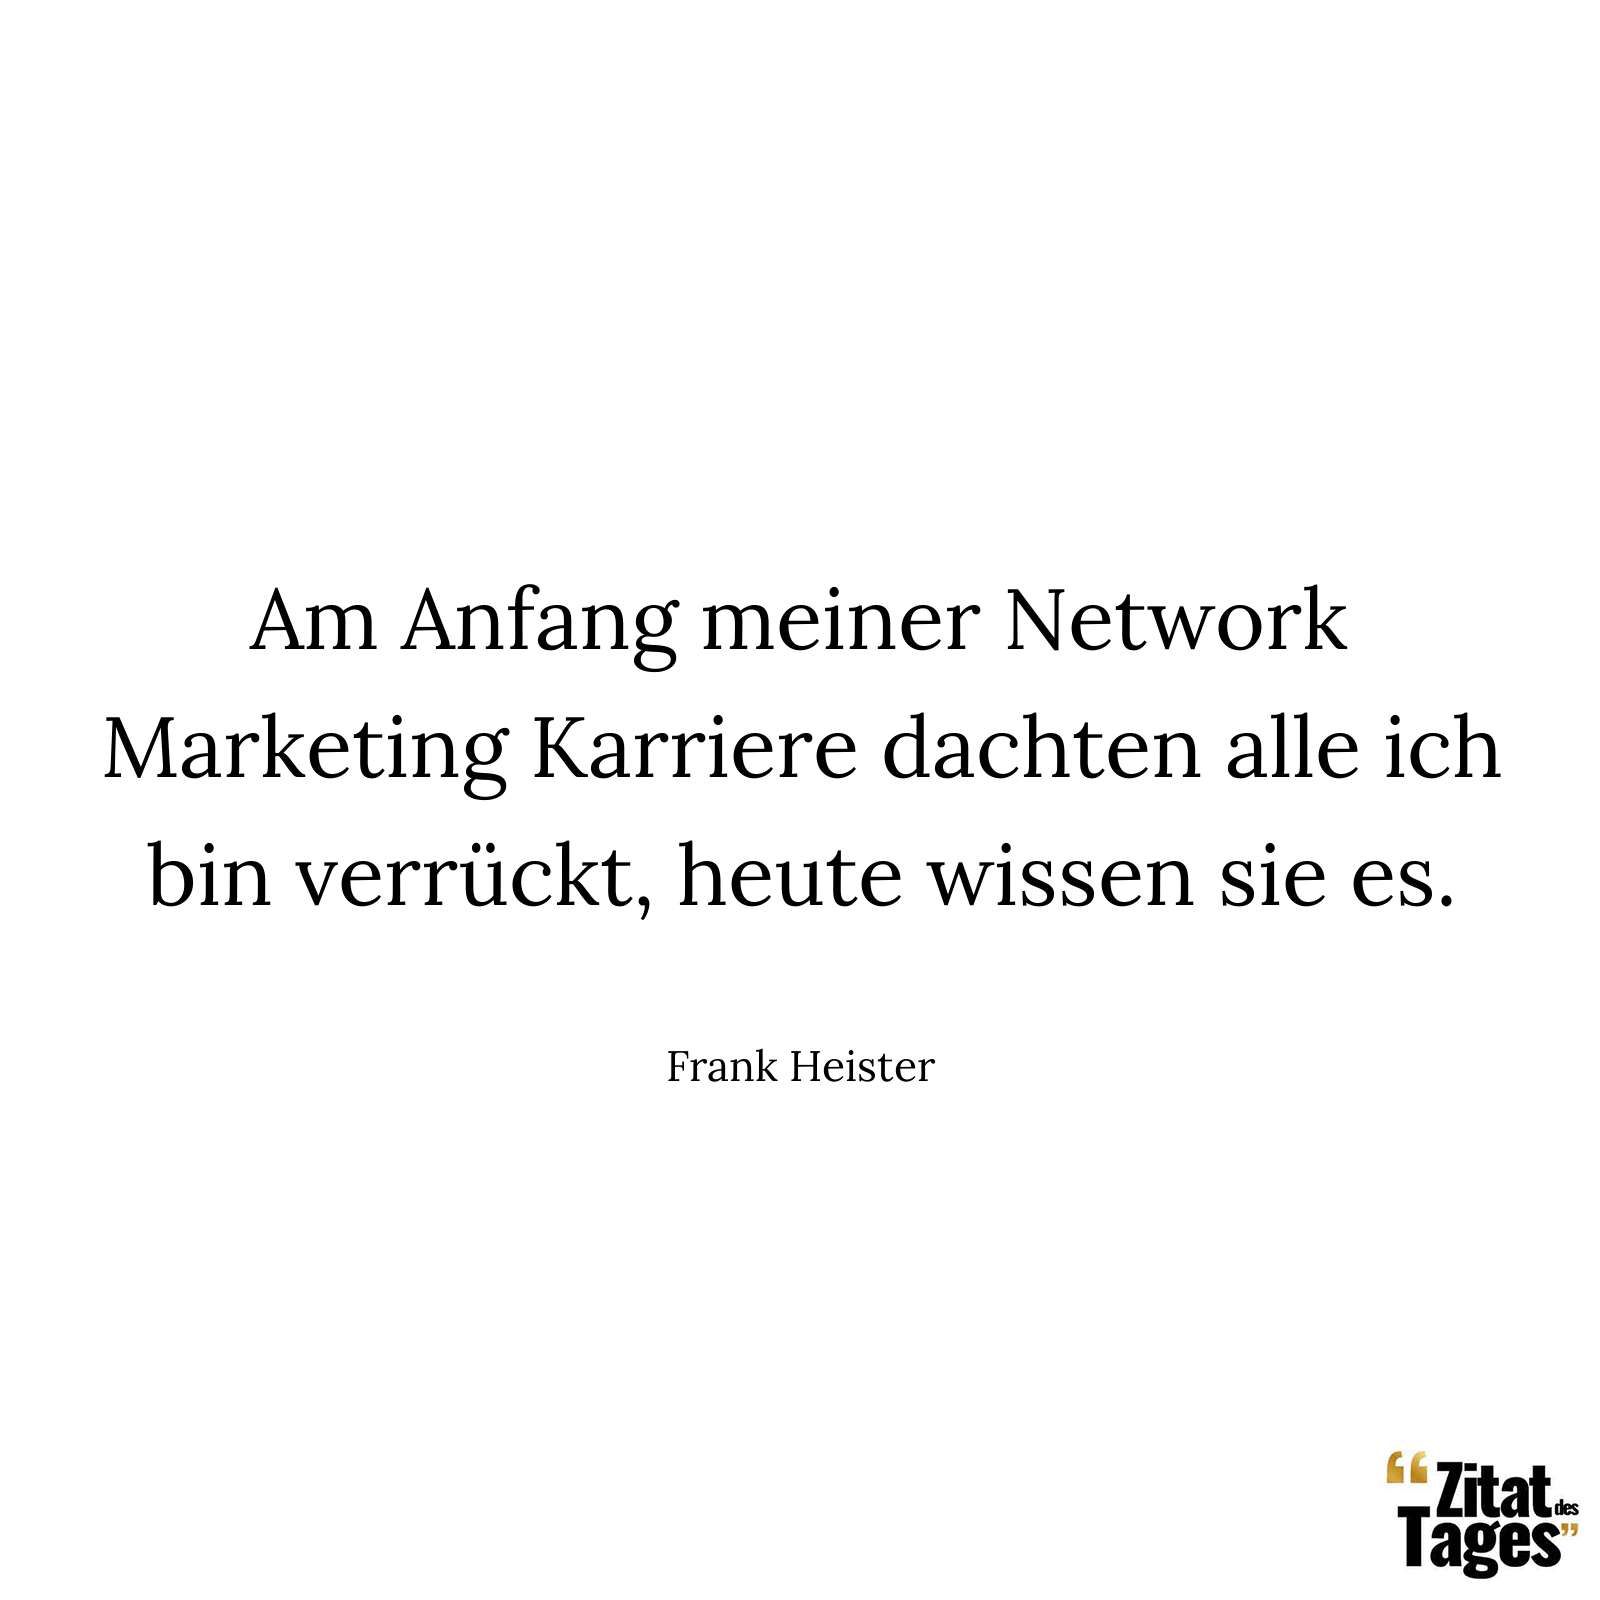 Am Anfang meiner Network Marketing Karriere dachten alle ich bin verrückt, heute wissen sie es. - Frank Heister